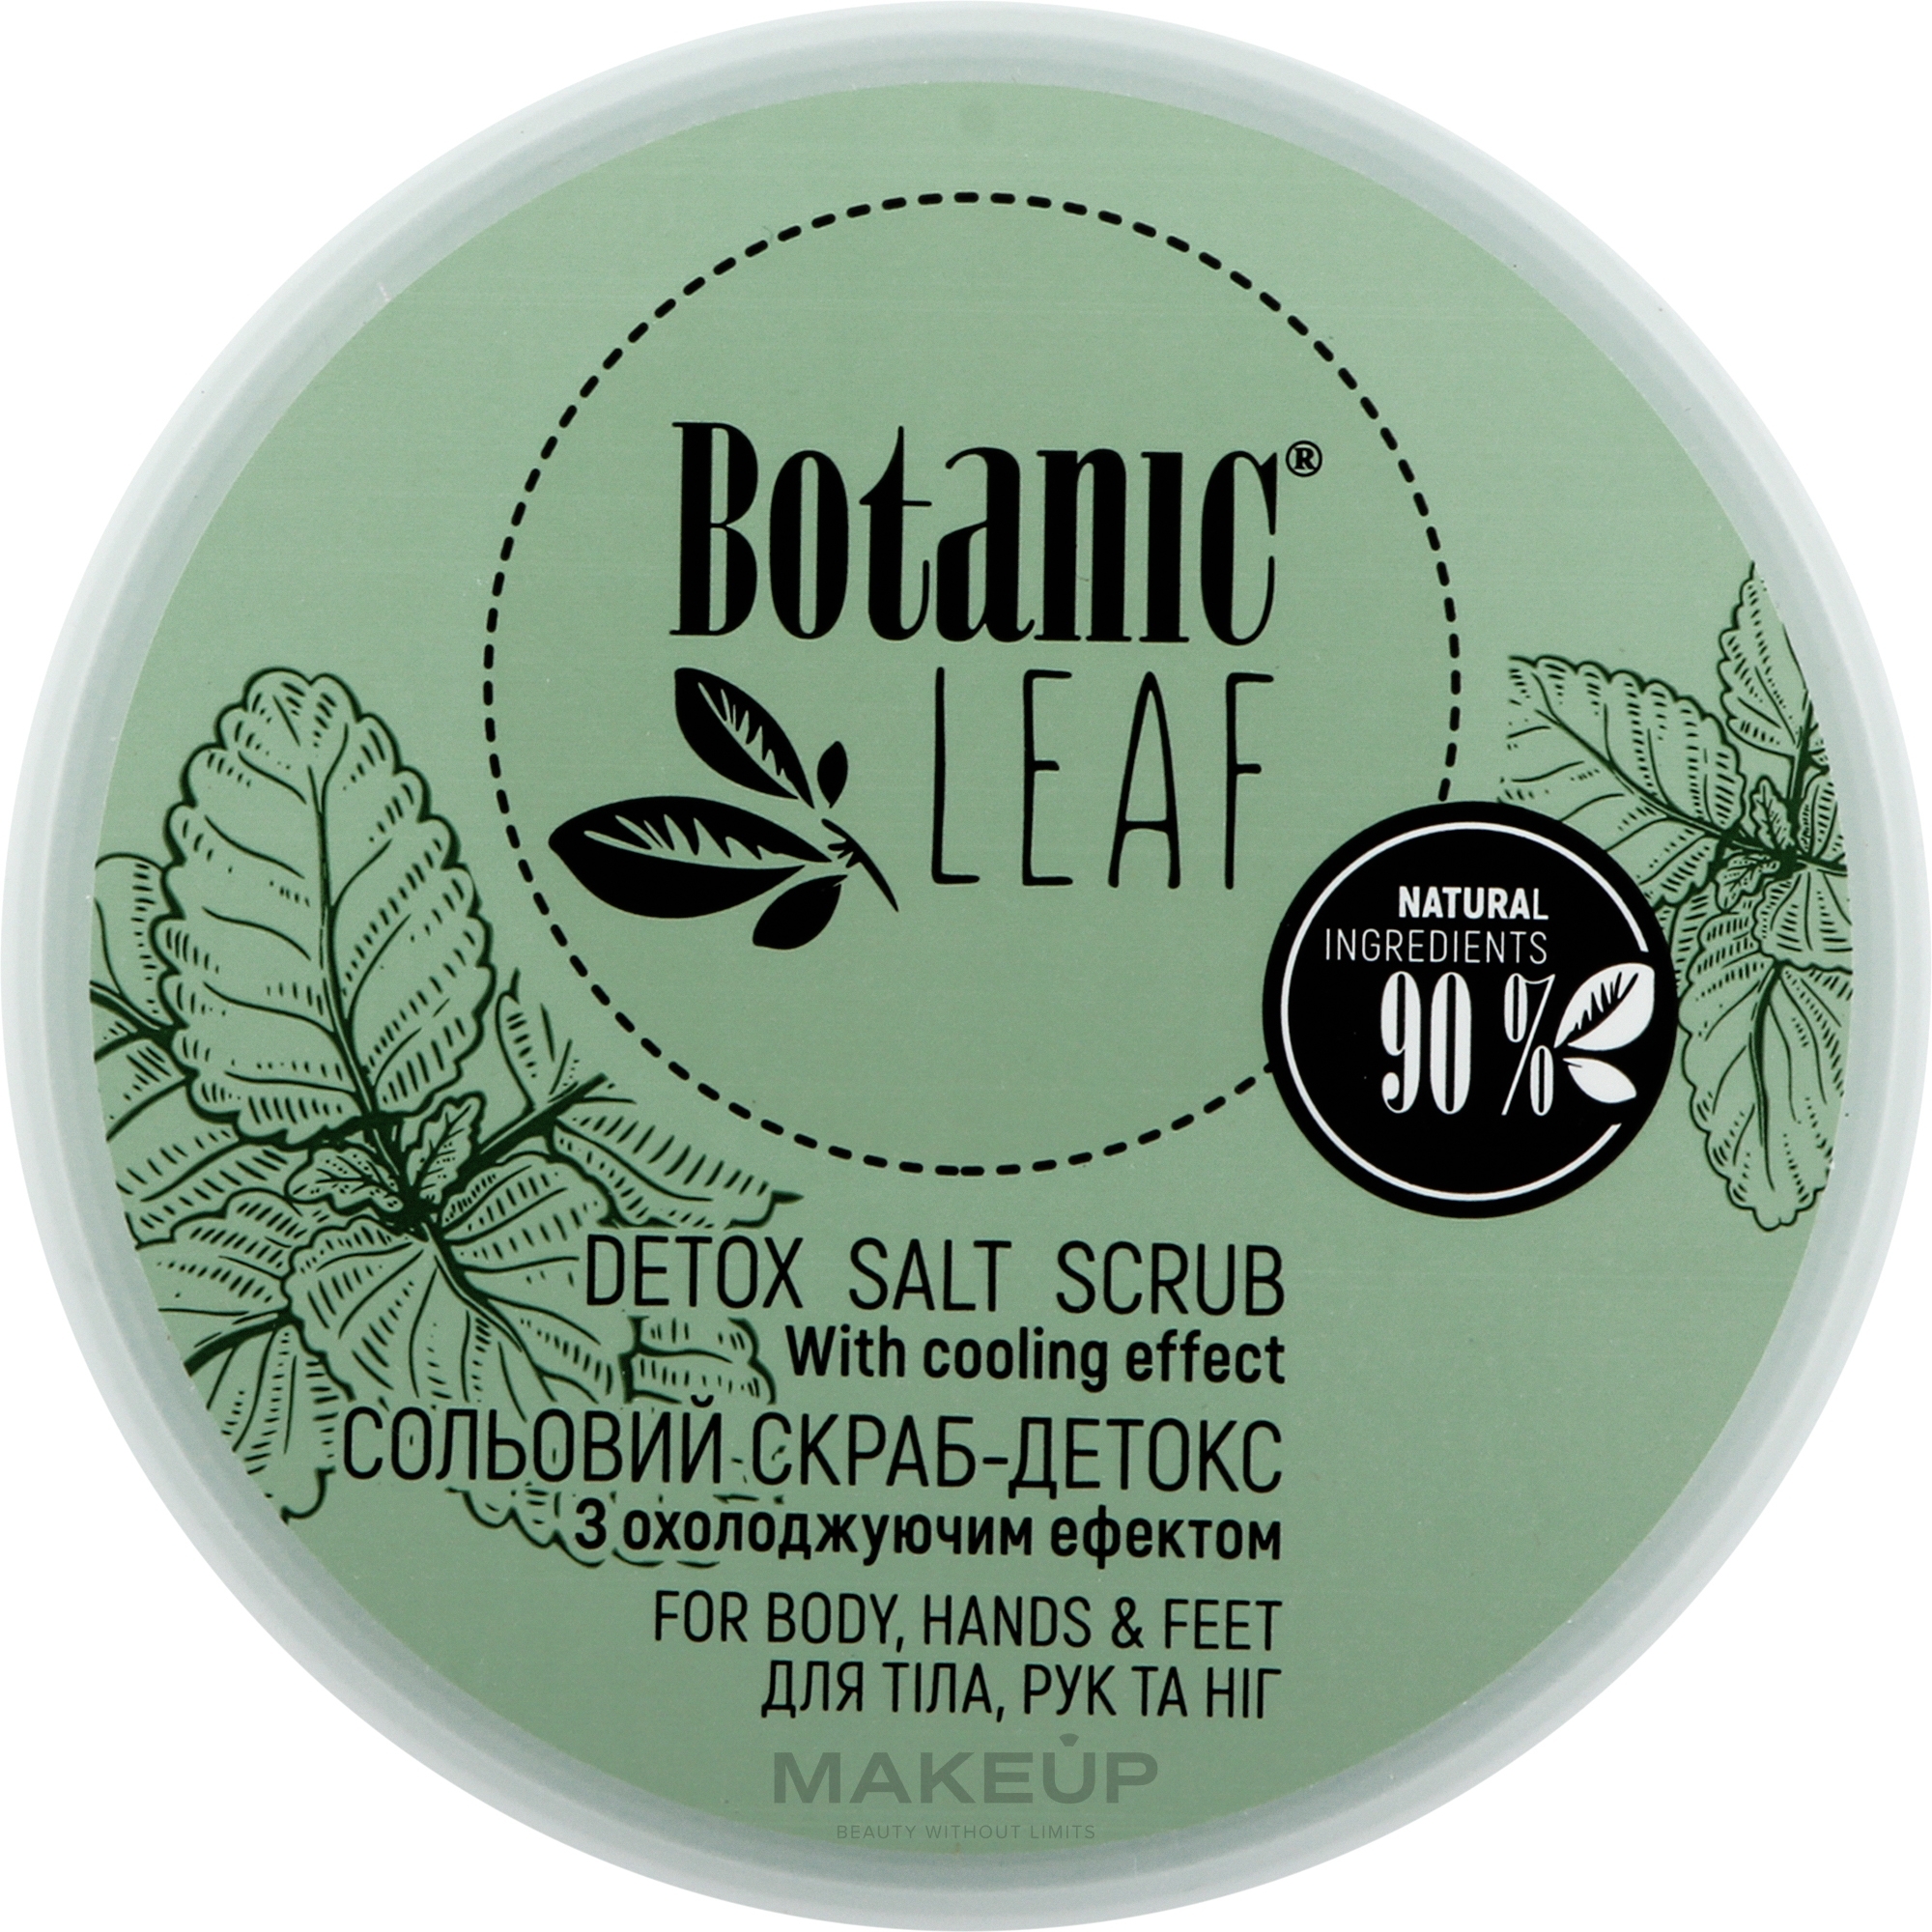 Скраб-детокс солевой для тела, рук и ног - Botanic Leaf Detox Salt Scrub — фото 300g